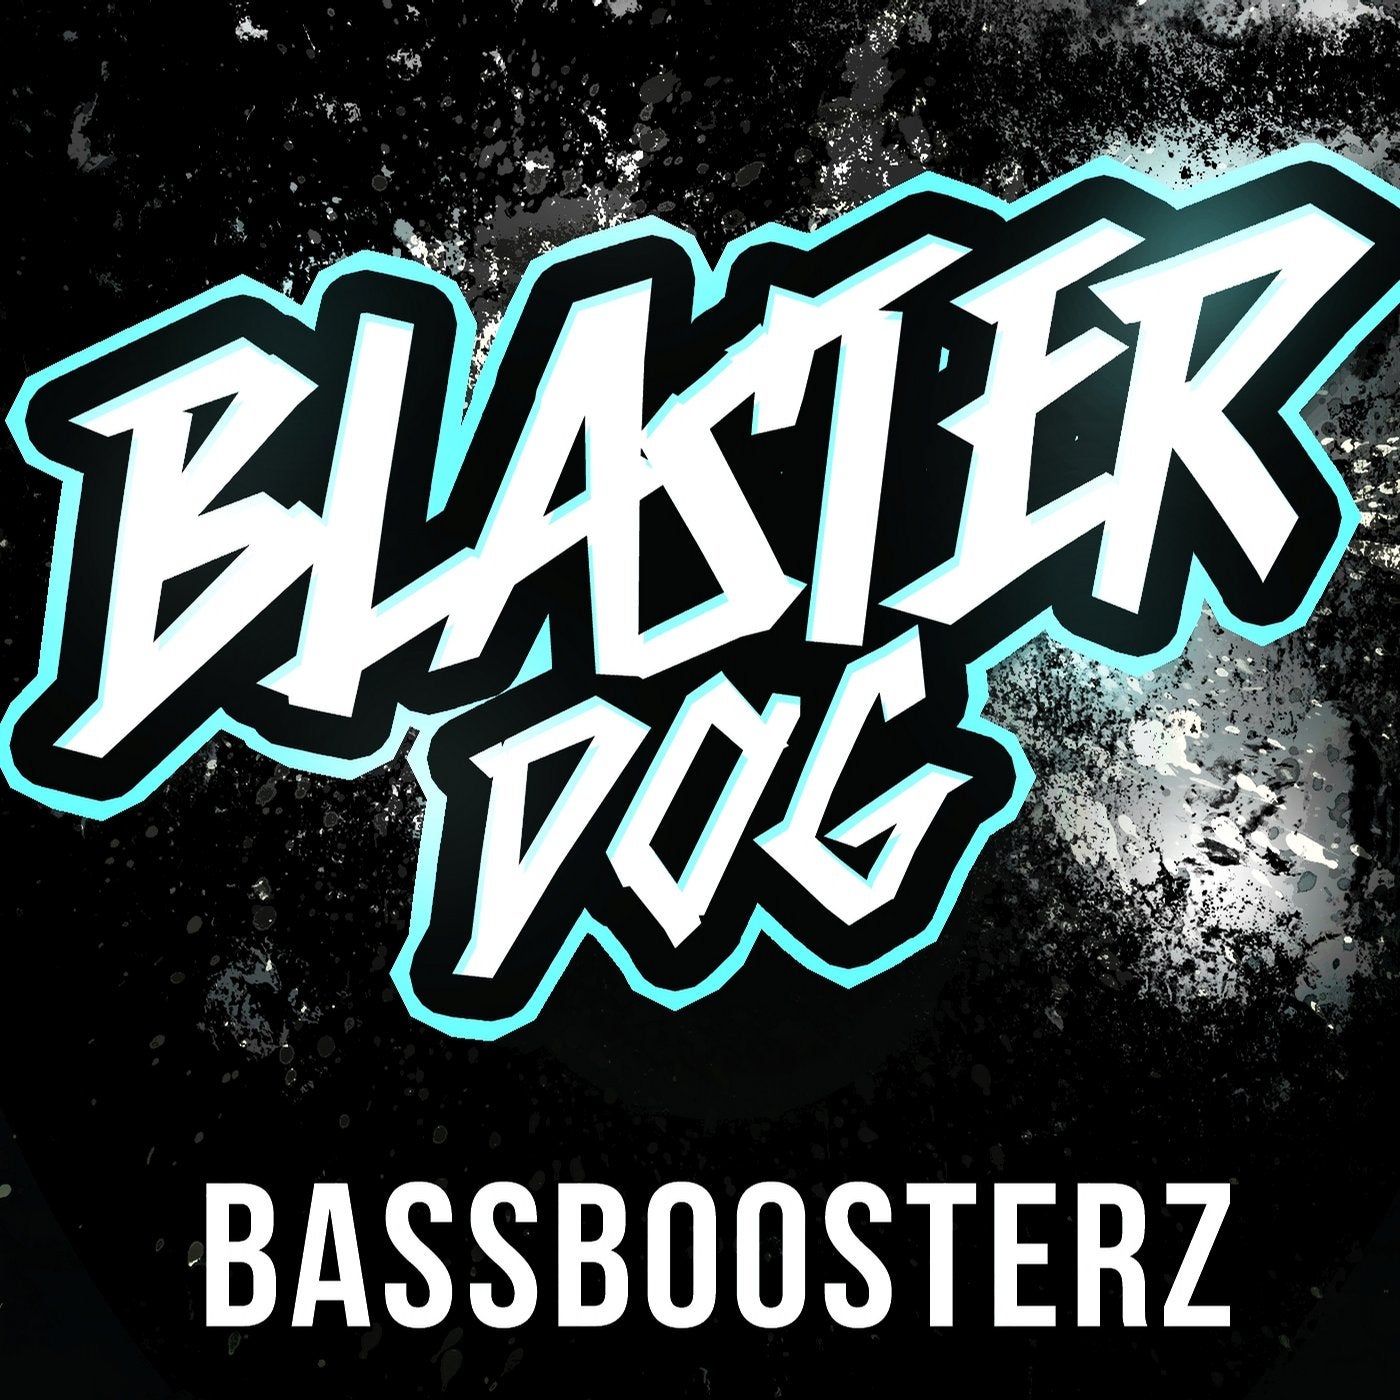 BassBoosterz